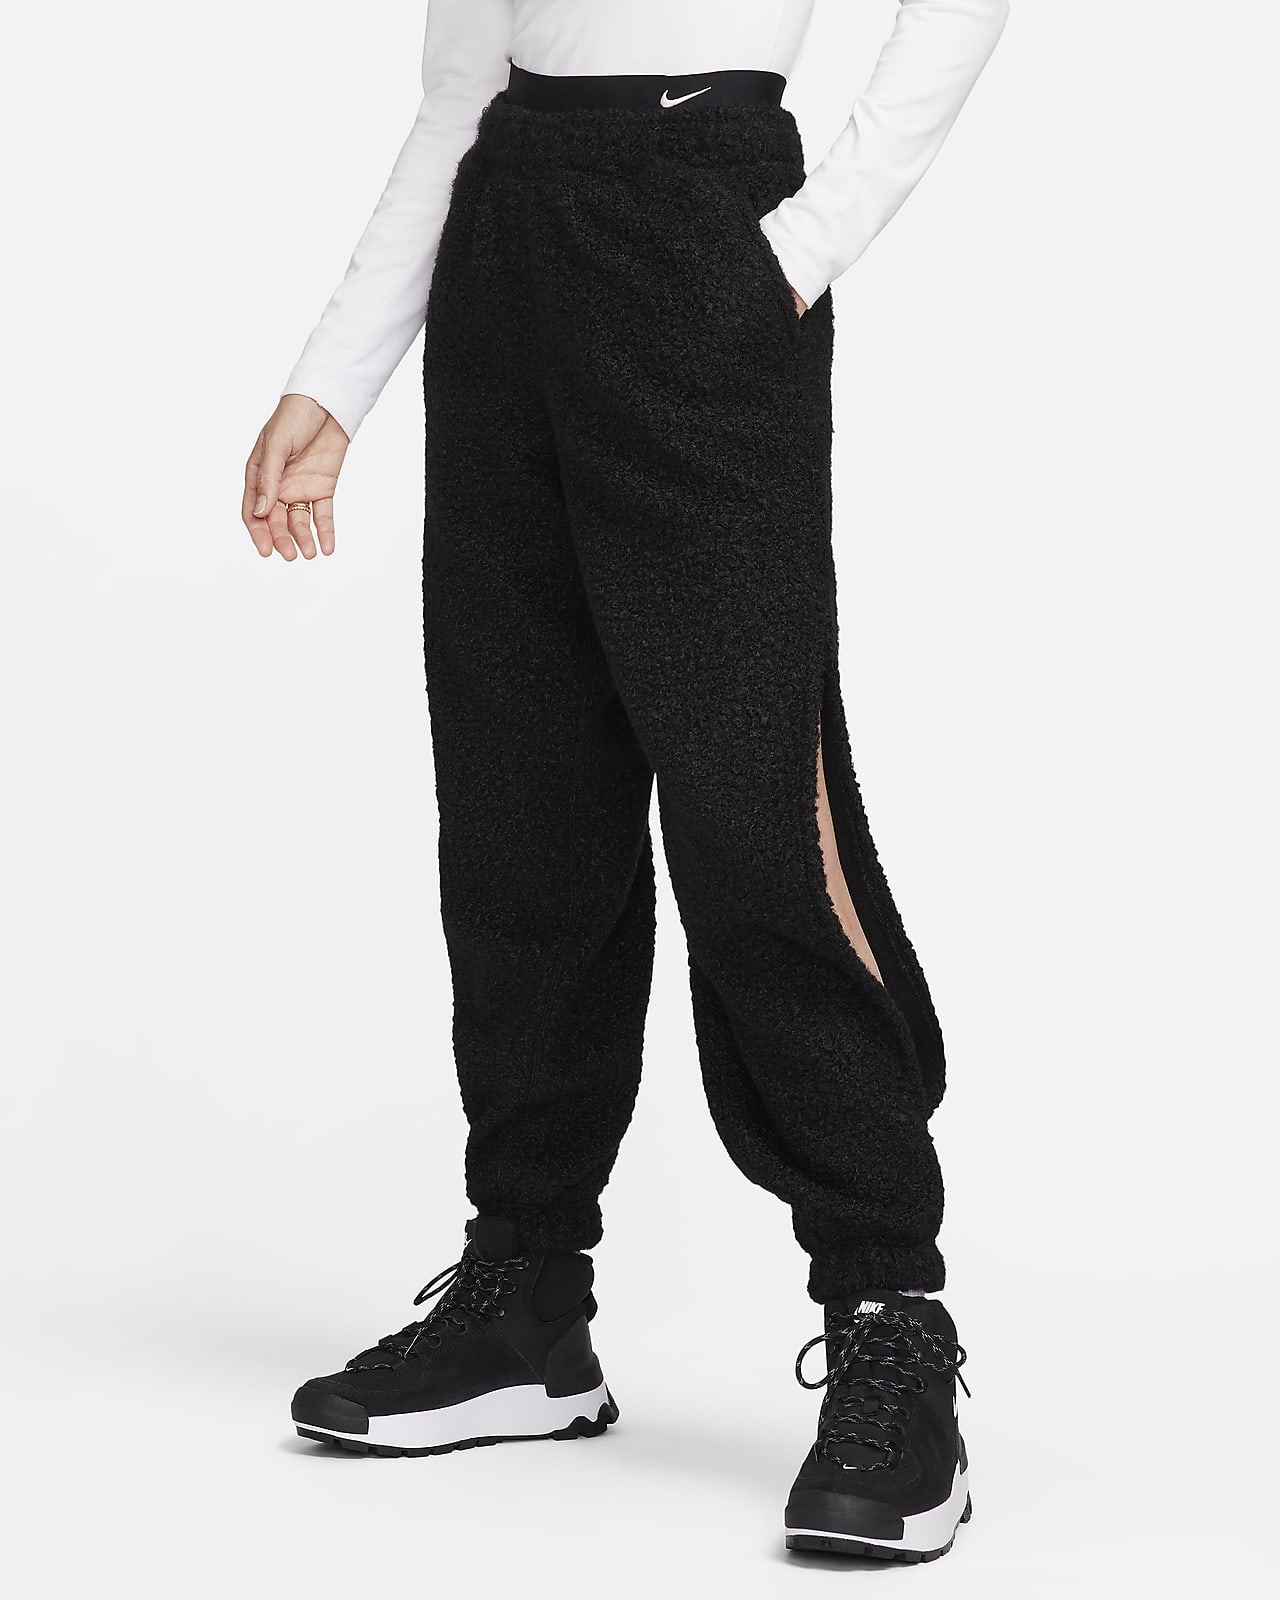 Dámské flísové kalhoty Nike Sportswear Collection s vysokým vlasem